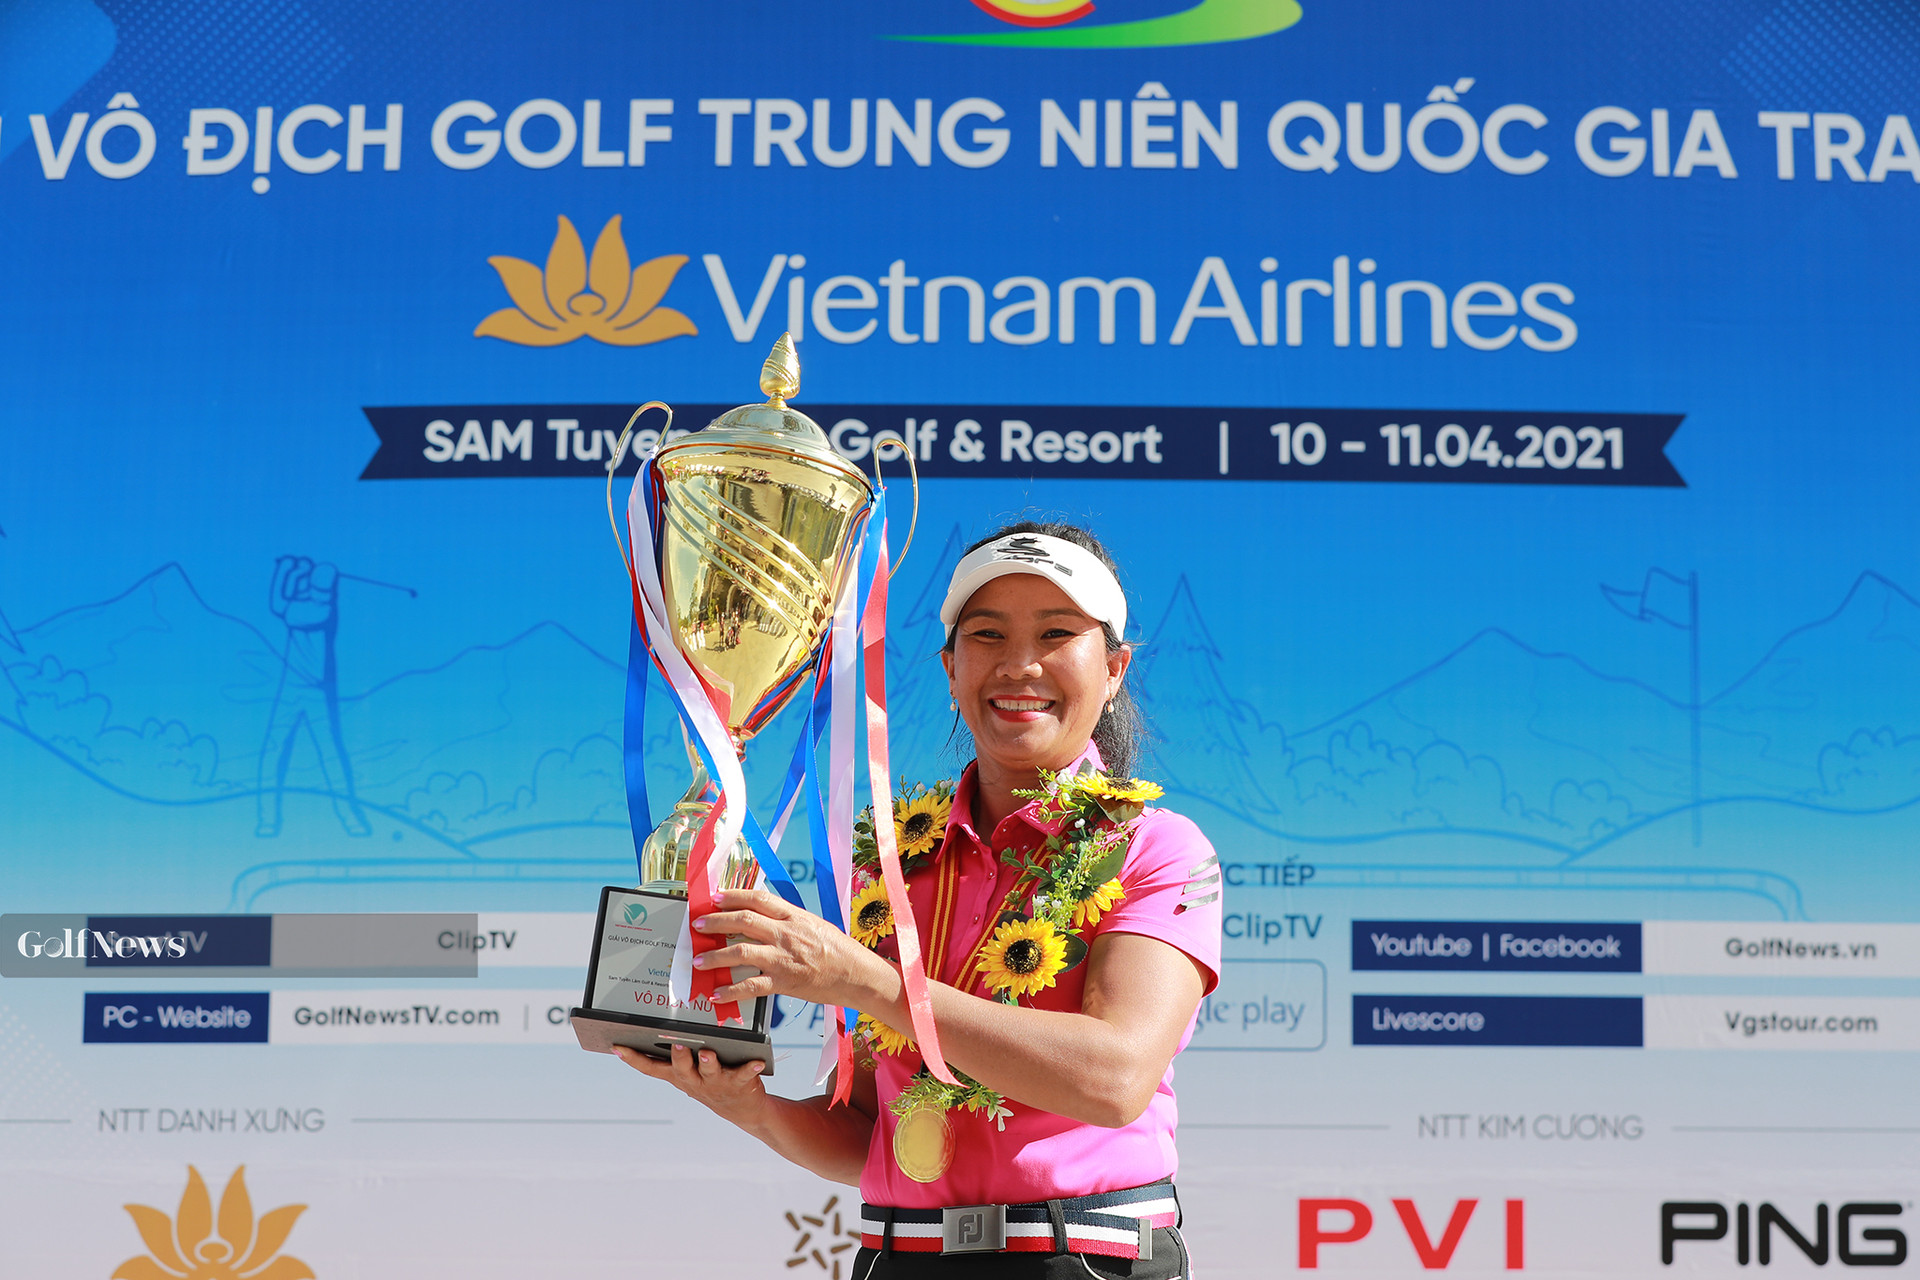 Những dấu ấn đặc biệt tại giải Vô địch golf Trung niên Quốc gia 2021 tranh cúp Vietnam Airlines. - Ảnh 2.